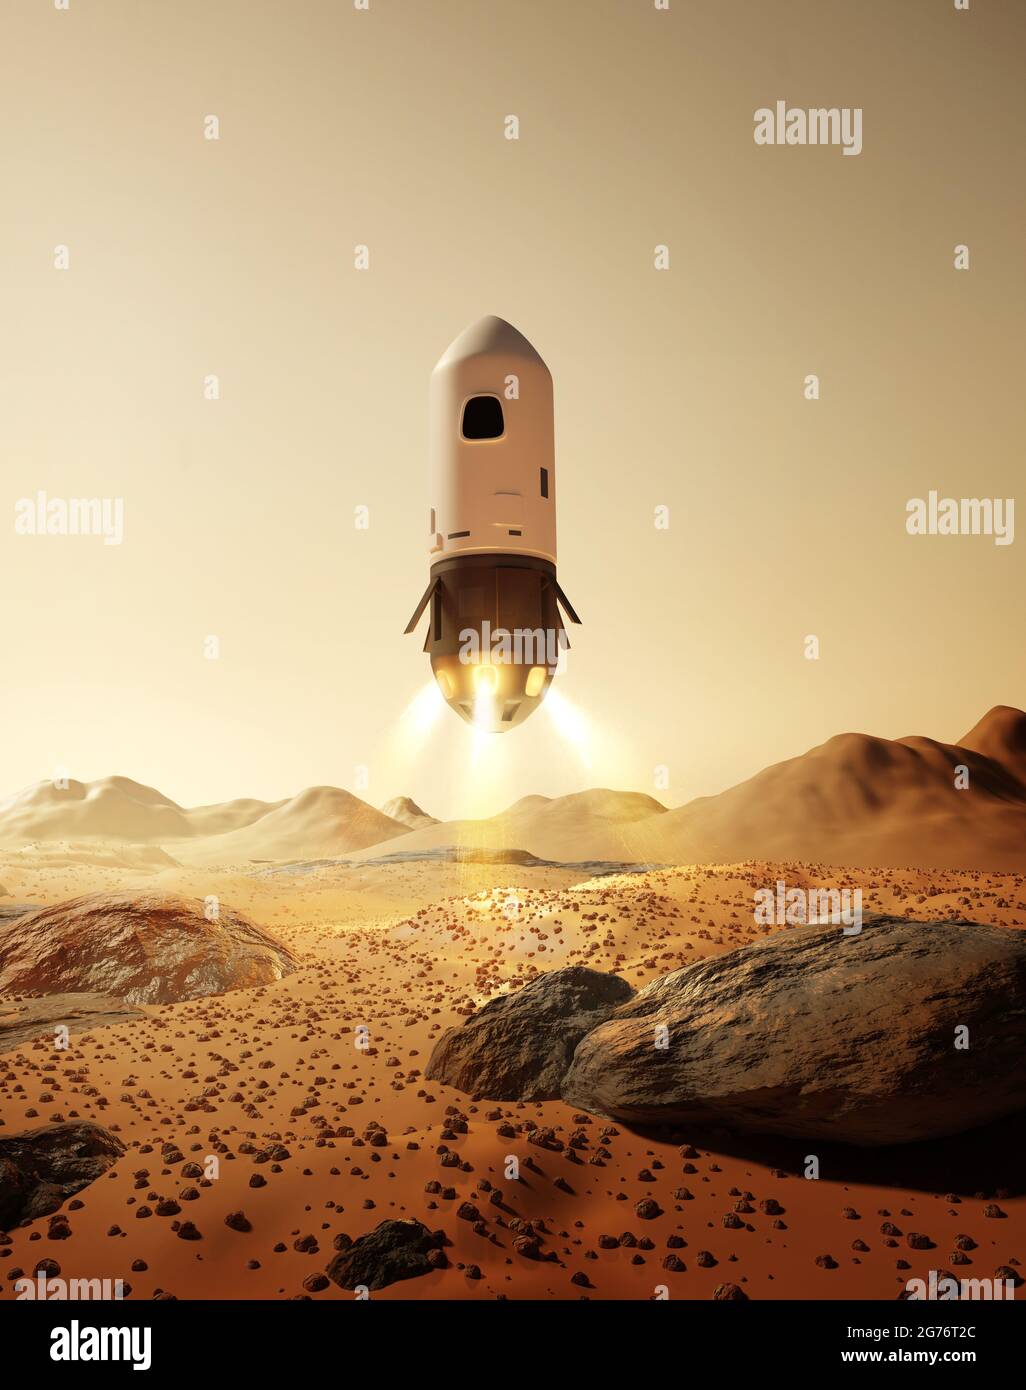 Une fusée transportant des astronautes débarquant à la surface de la planète Mars. Futures missions d'exploration spatiale. Illustration 3D. Banque D'Images